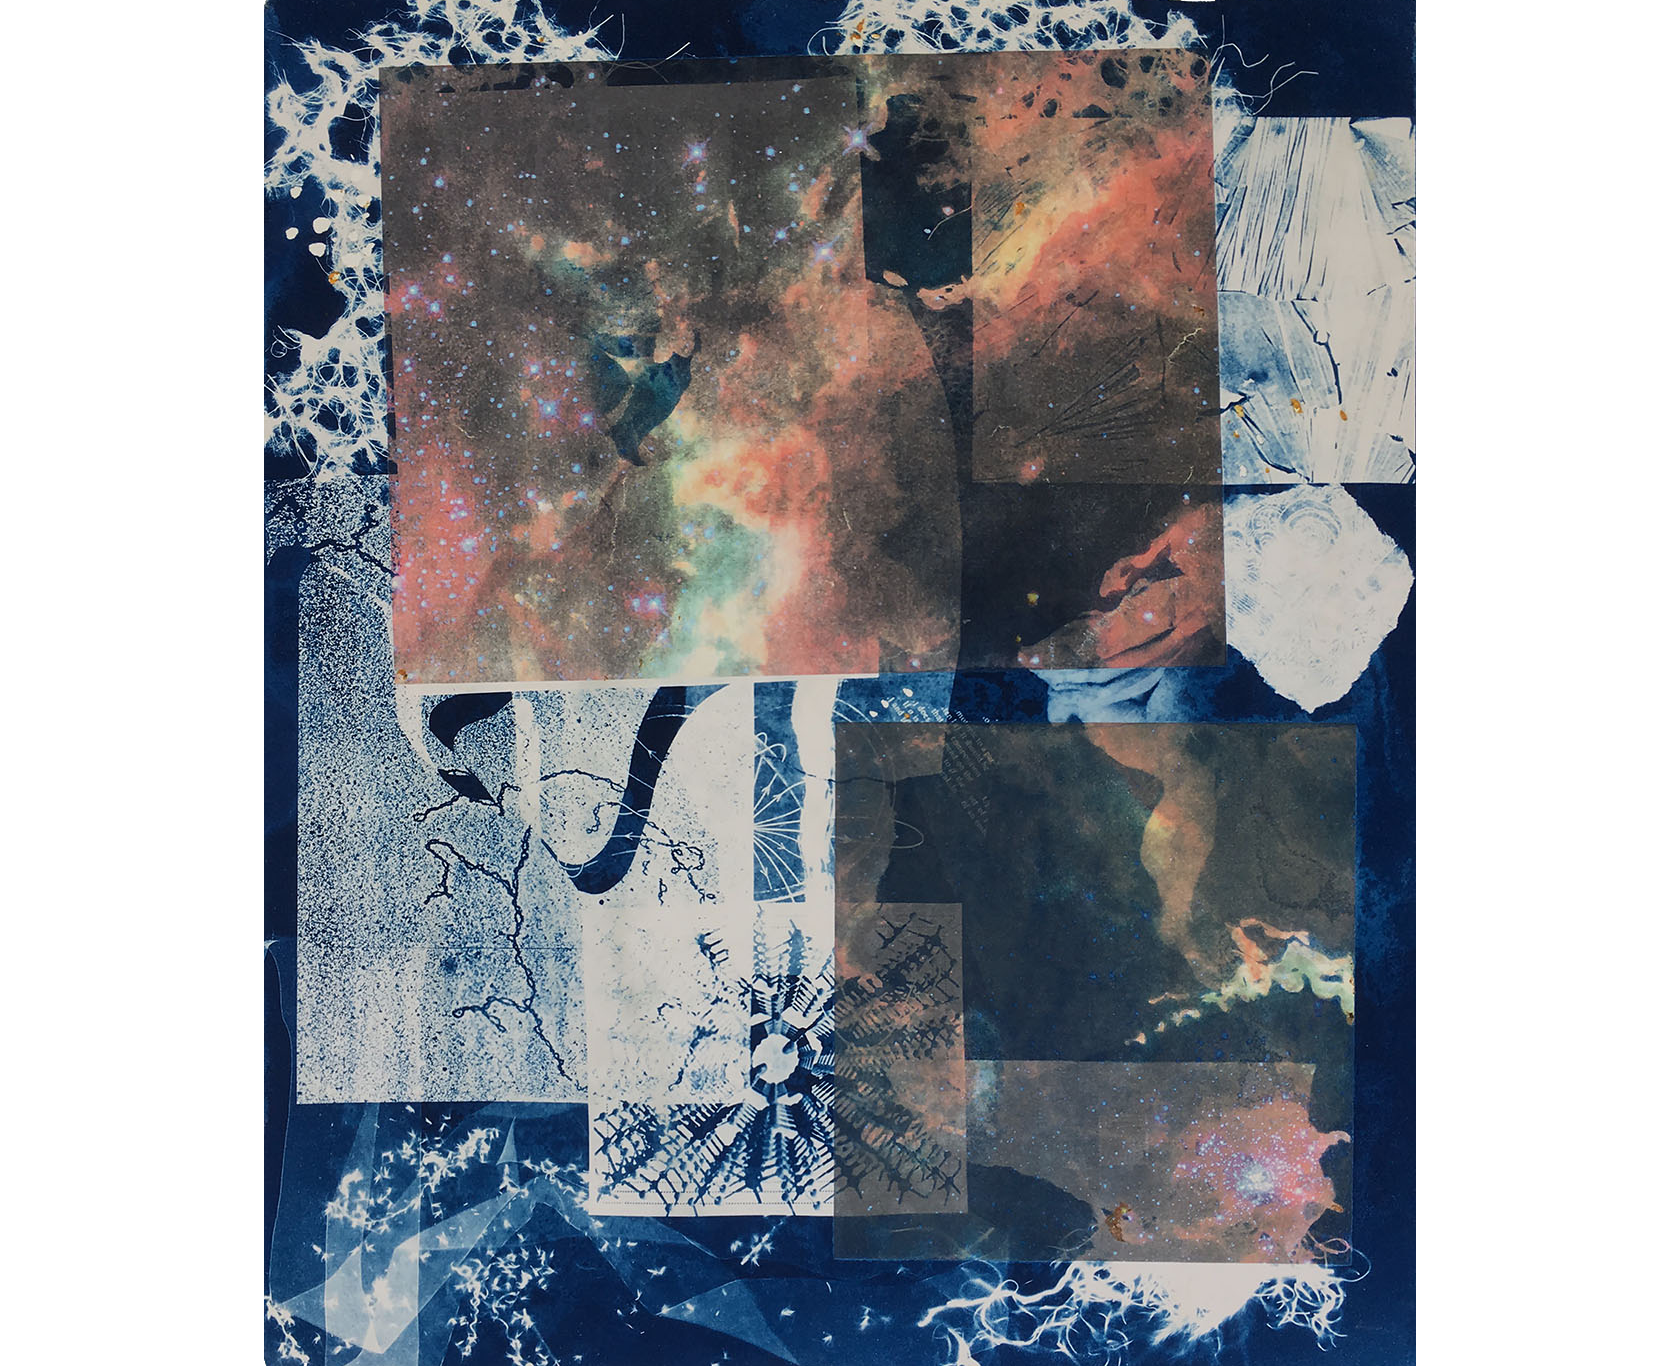  Nebula, 1996. Cyanotype, 22 x 19     